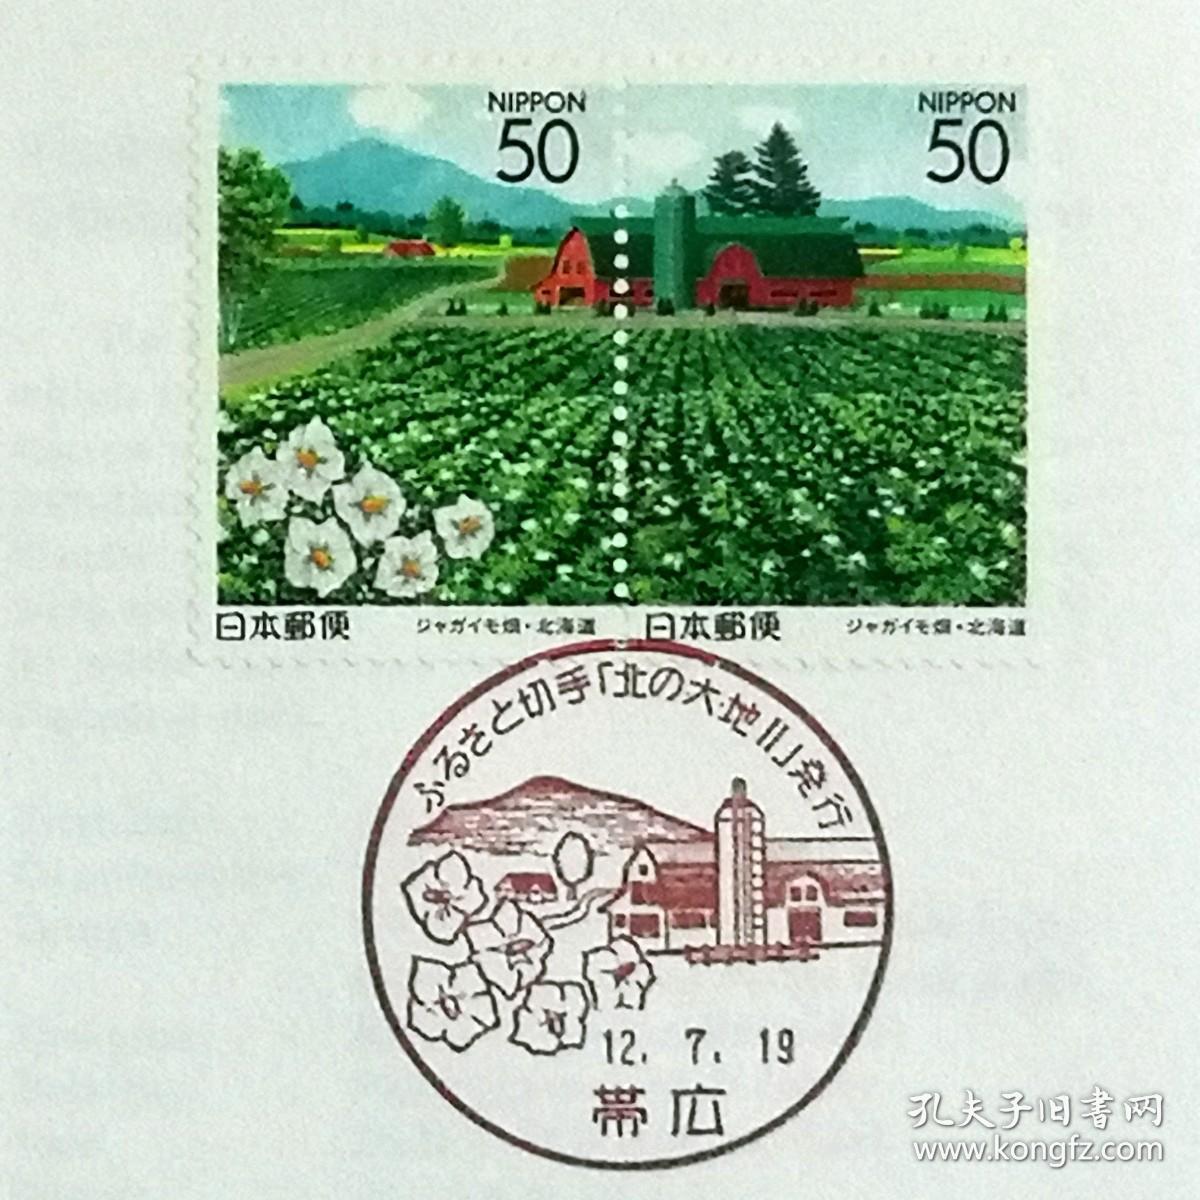 日本首日封：2000年日本地方邮政北海道（北海道-26）发行《北方大地Ⅱ》首日封共2枚（盖“北方大地Ⅱ”纪念邮戳）